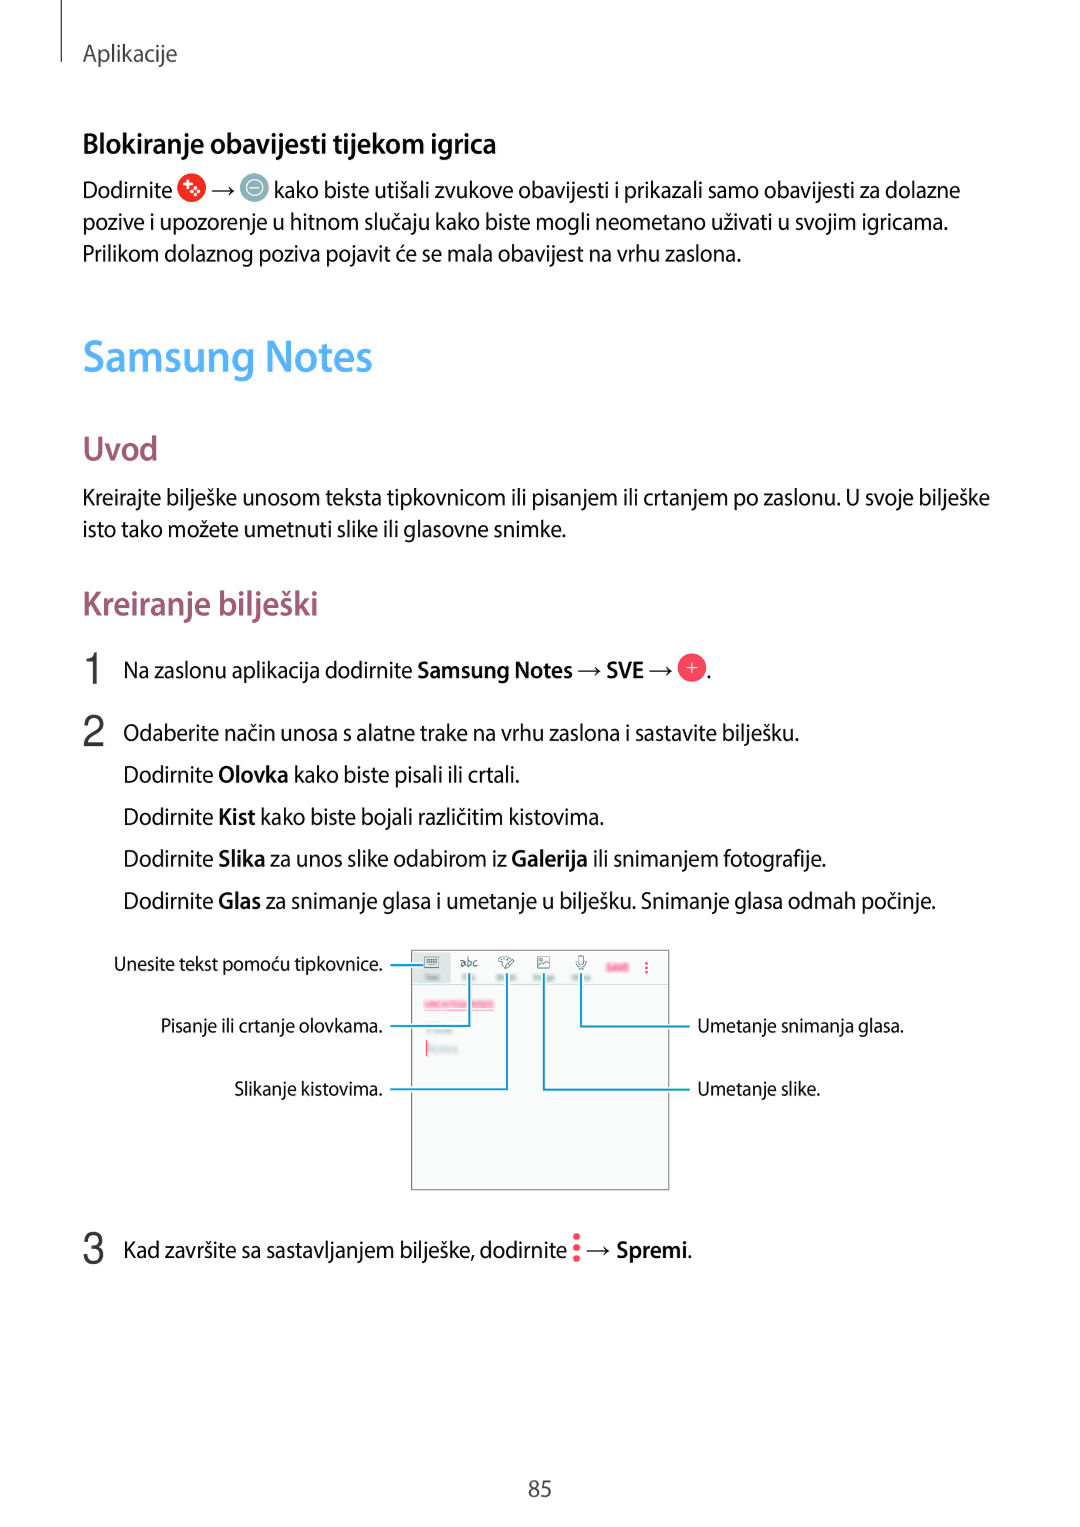 Samsung SM-J330FZDDSEE, SM-J330FZDNSEE manual Samsung Notes, Kreiranje bilješki, Blokiranje obavijesti tijekom igrica 